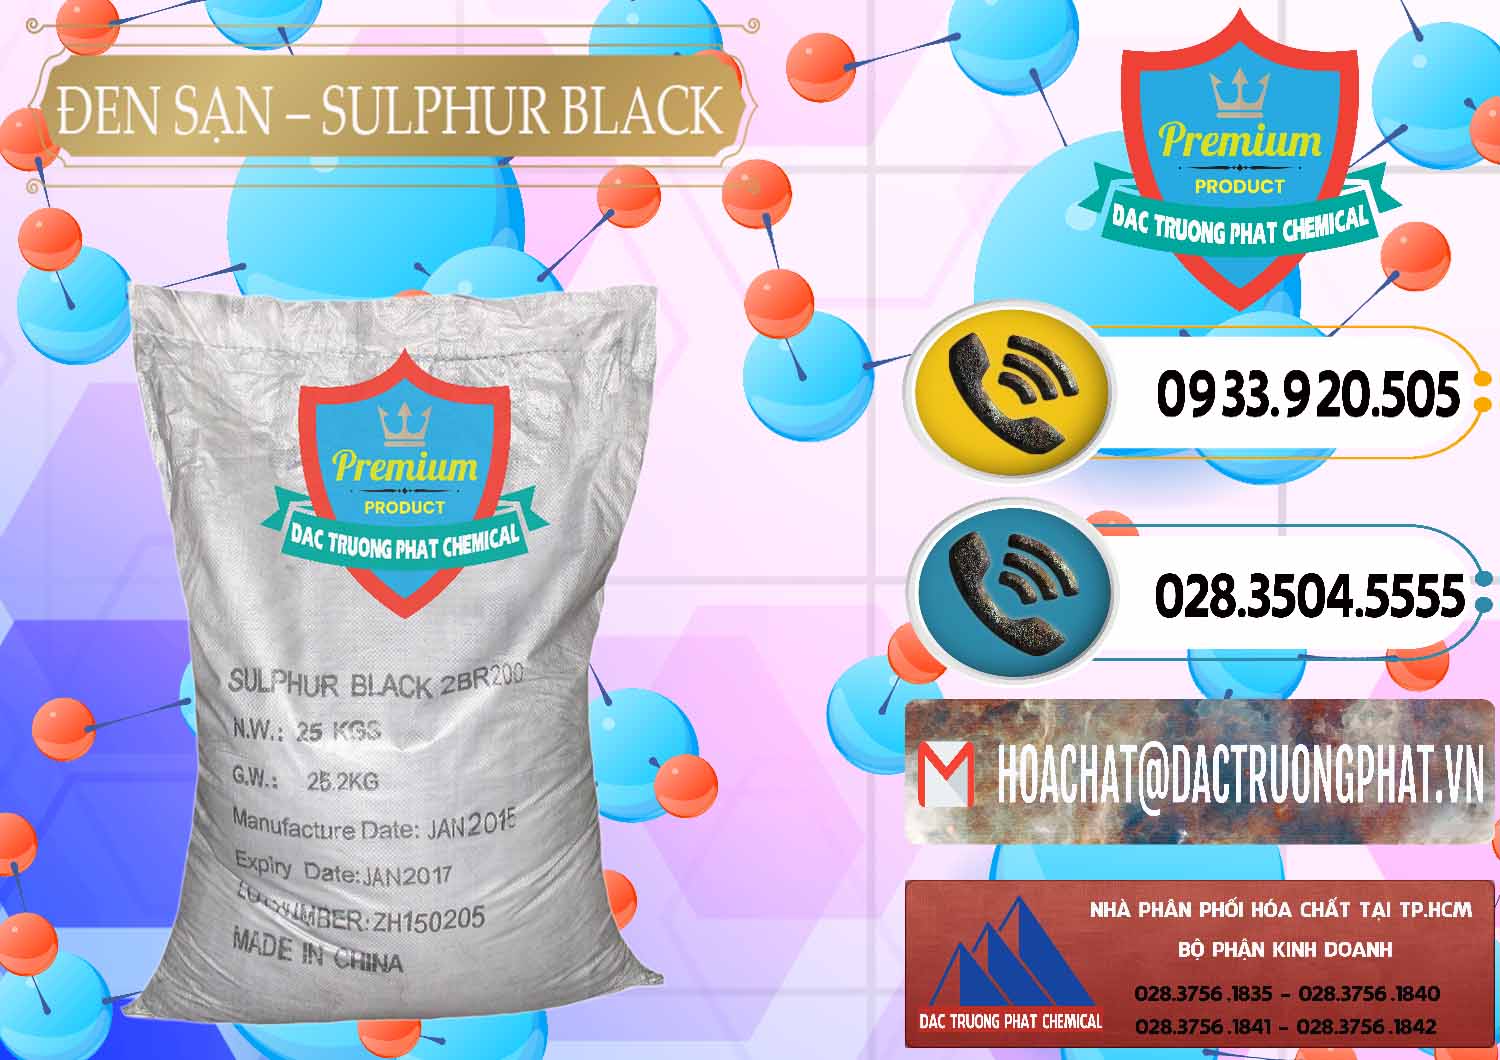 Đơn vị chuyên phân phối và bán Đen Sạn – Sulphur Black Trung Quốc China - 0062 - Nhà phân phối và cung ứng hóa chất tại TP.HCM - hoachatdetnhuom.vn